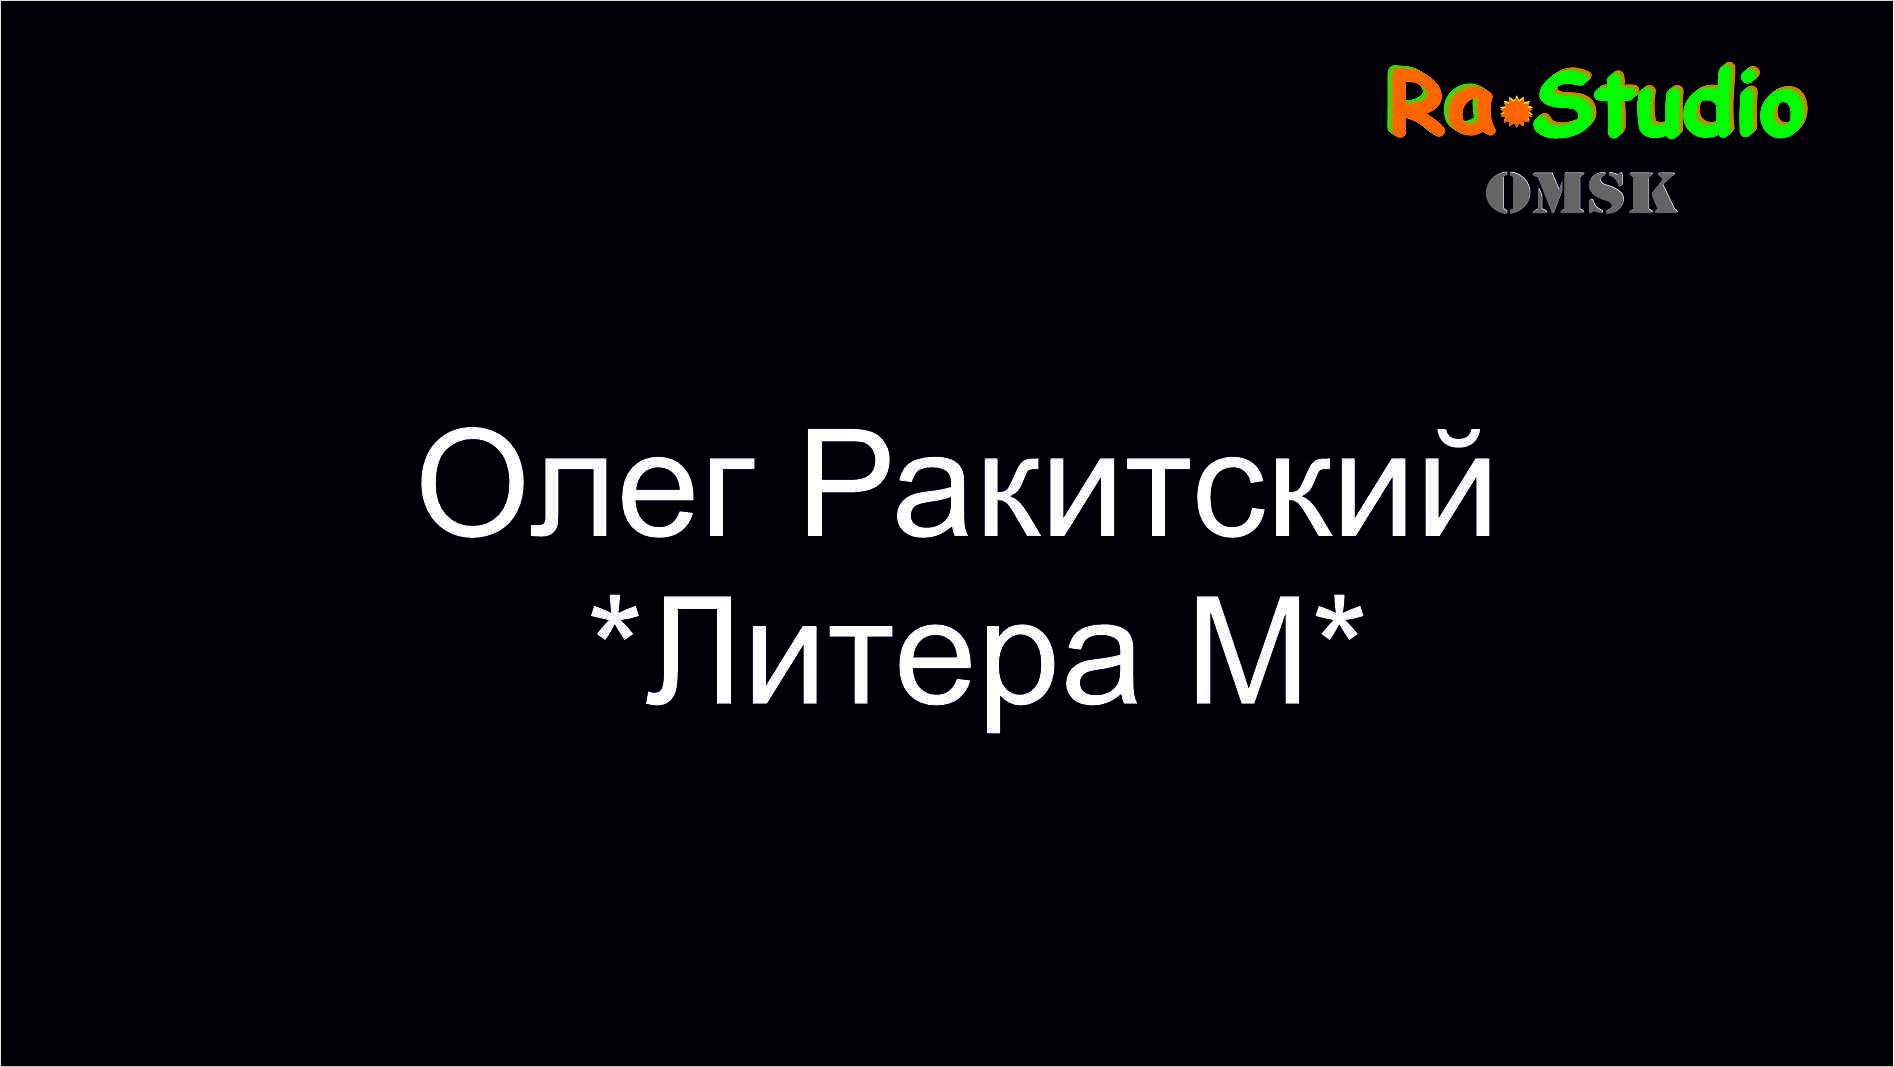 #Ra_Studio_Omsk  "Литера М" .mp4